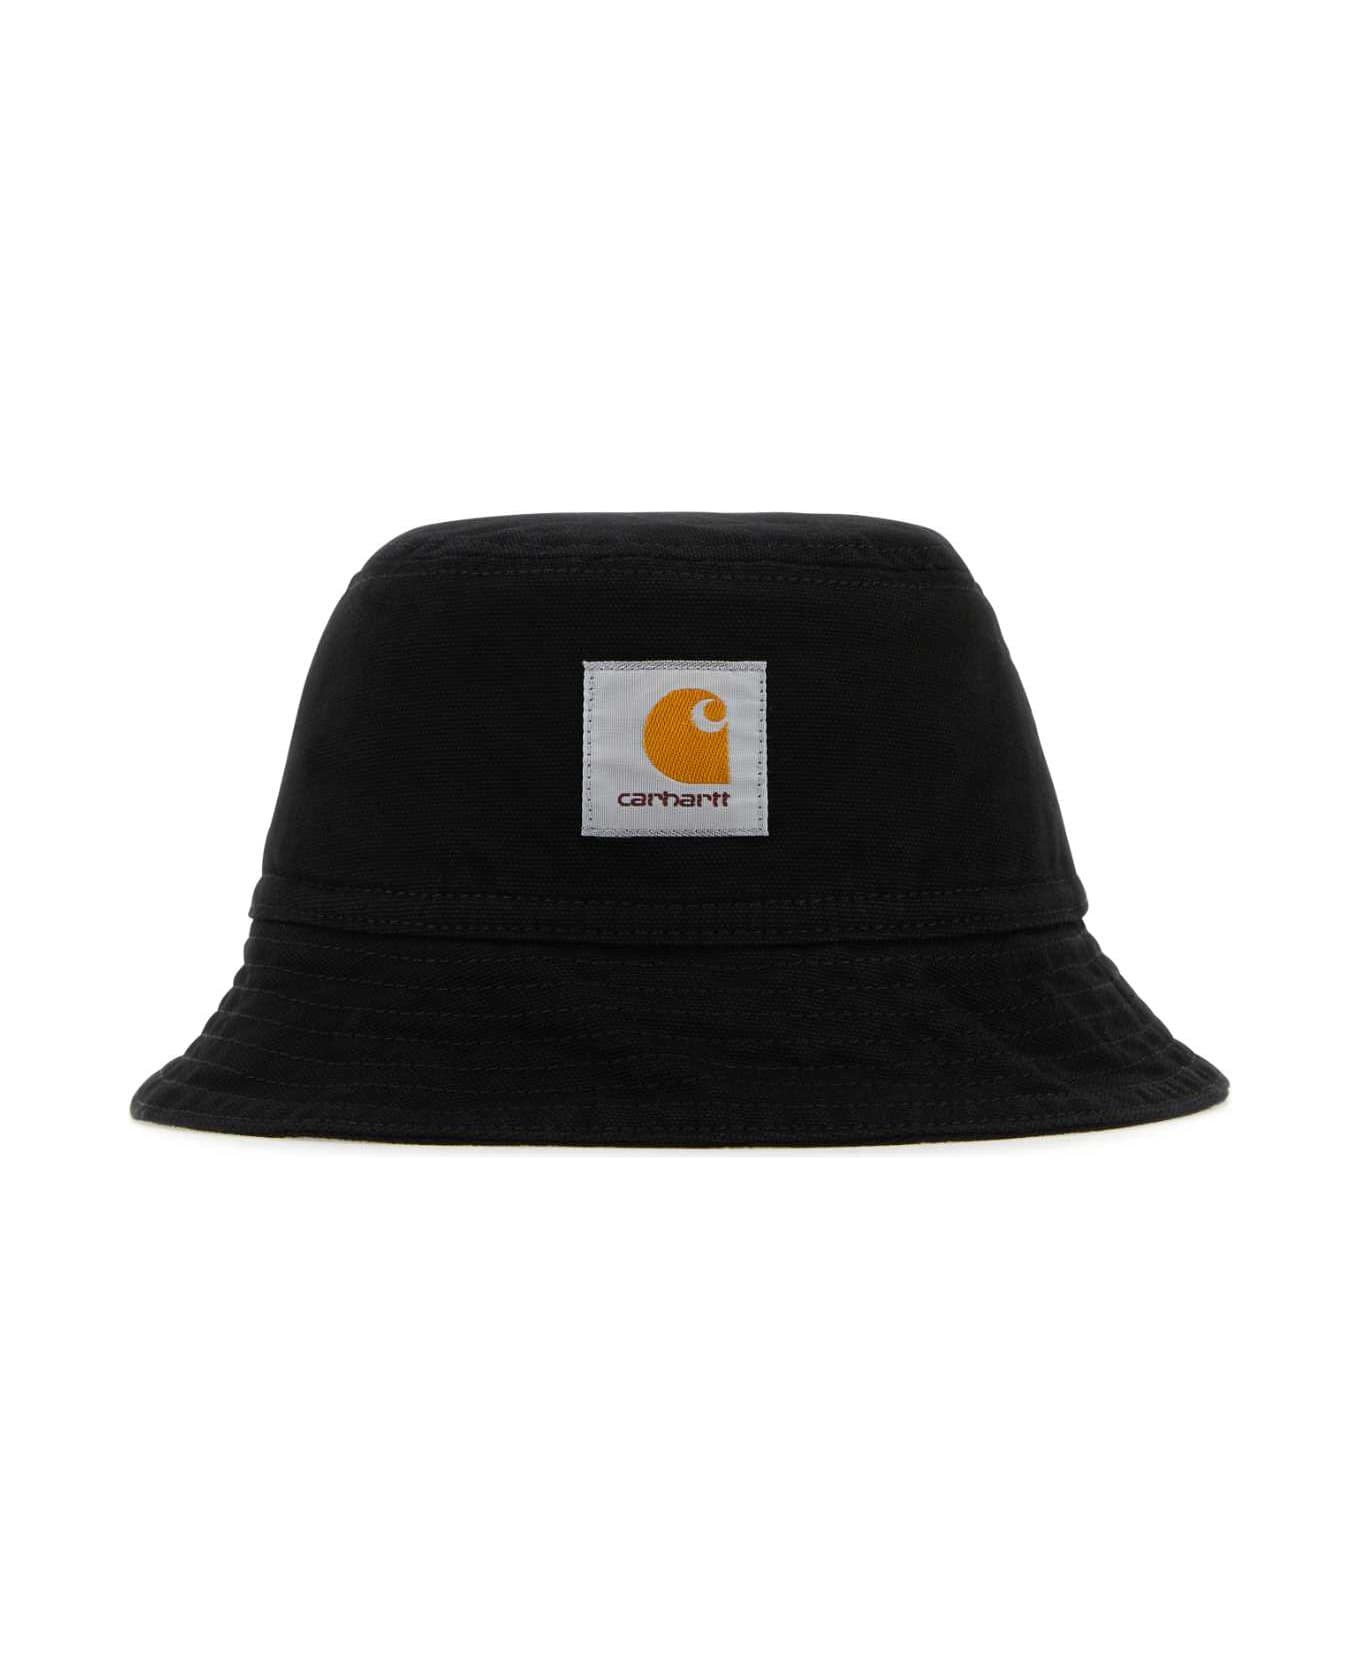 Carhartt Black Cotton Bayfield Bucket Hat - BLK